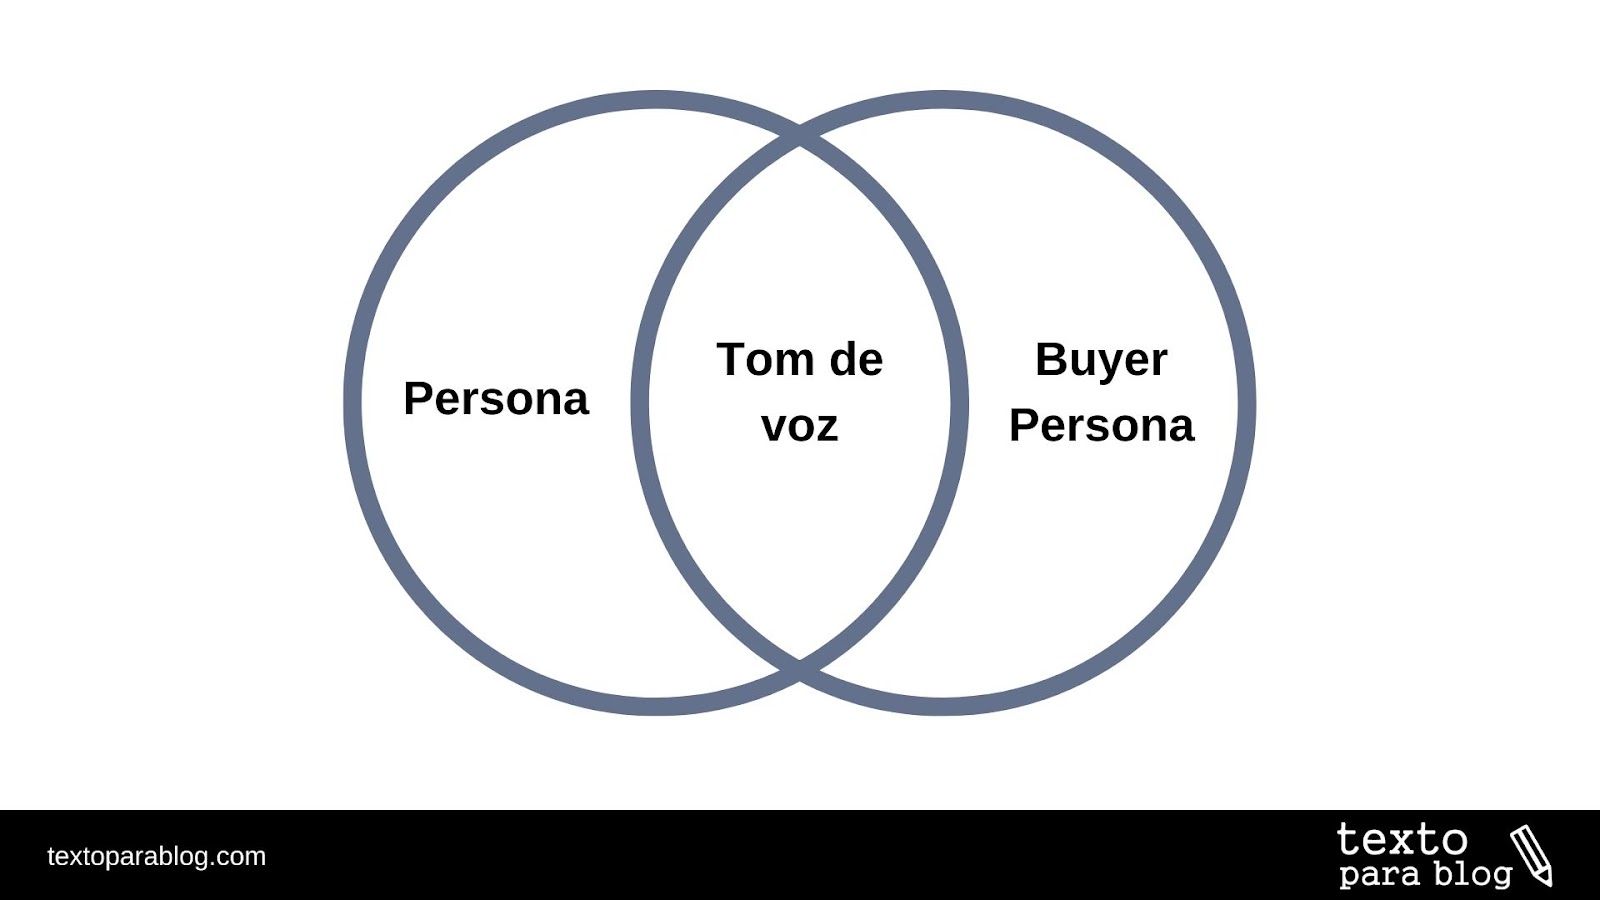 Na imagem, existem dois círculos que se unem no centro. No círculo da esquerda está escrito "persona" e, no direito, "buyer persona". No centro, na intersecção entre os dois círculos, está "tom de voz"